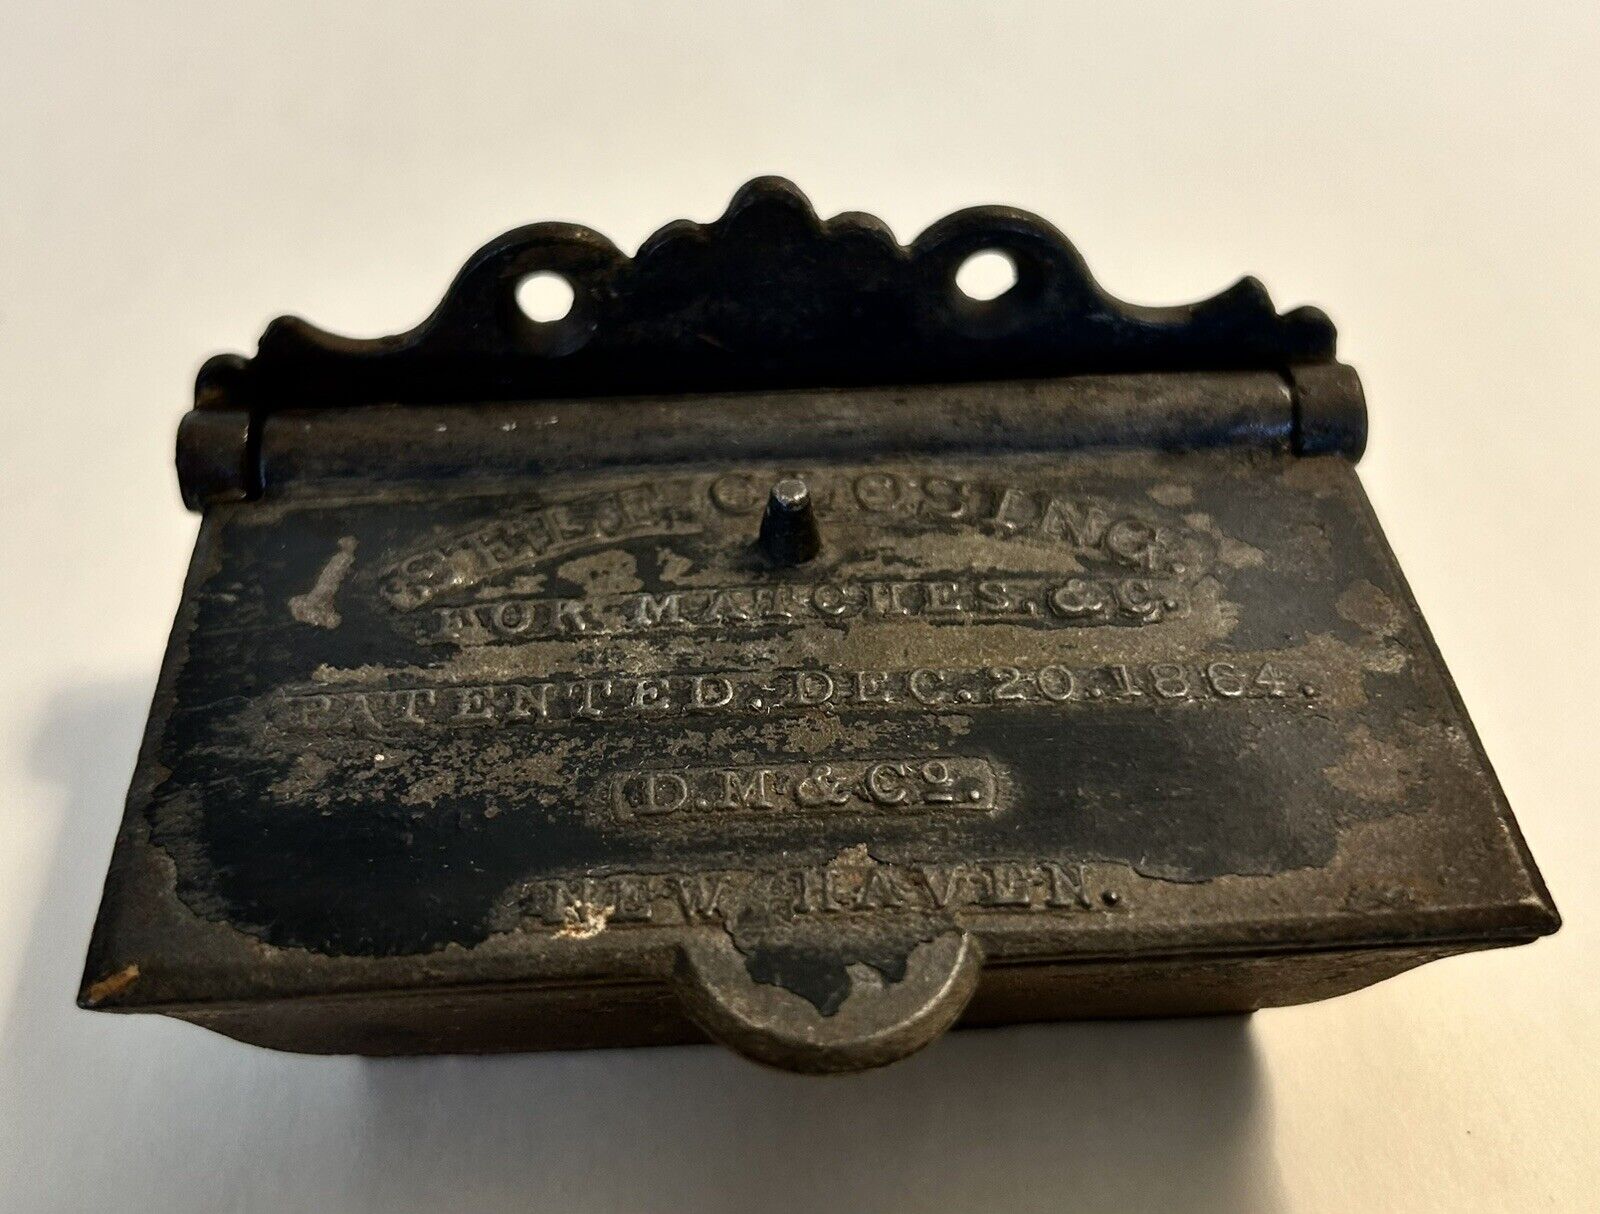 PAT\'D Dec. 20, 1864  D.M. & Co.  New Haven, Conn. Original Cast Iron Match Safe 